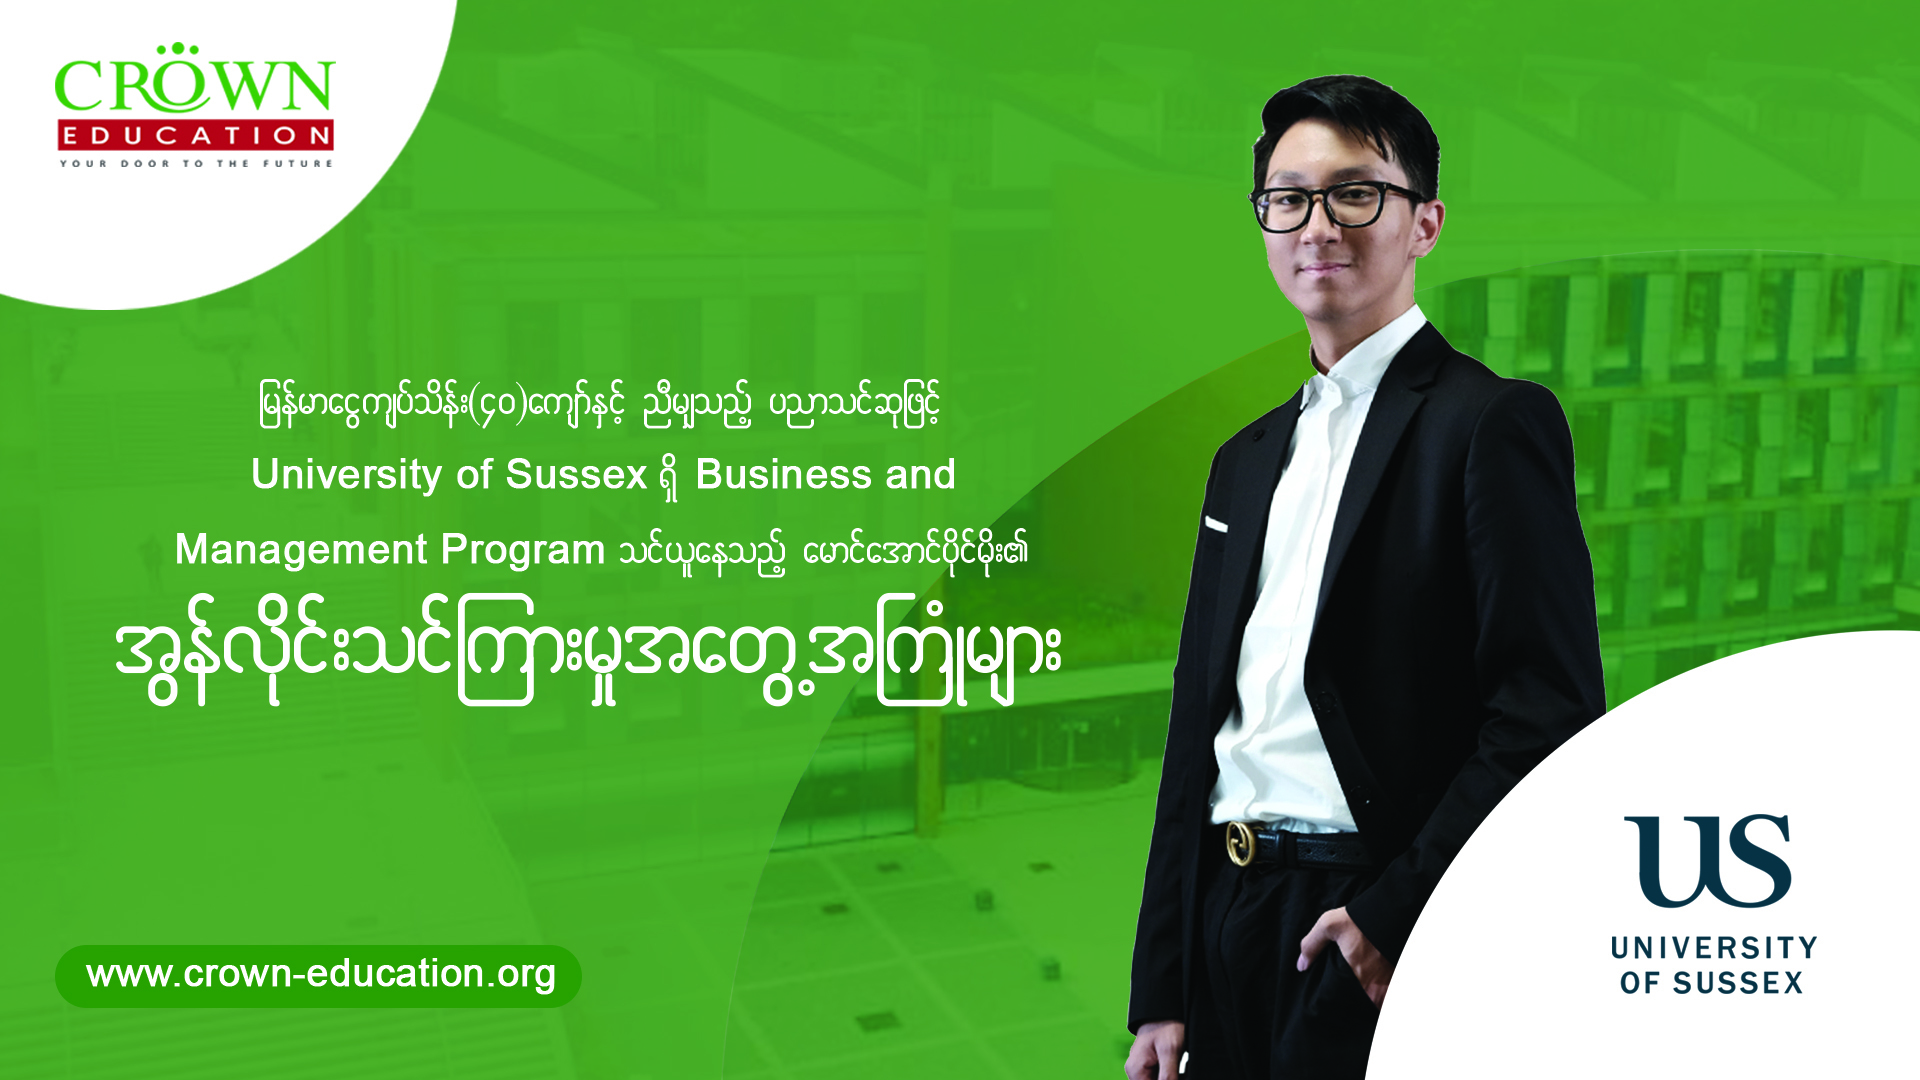 “မြန်မာငွေကျပ်သိန်း(၄ဝ)ကျော်နှင့်ညီမျှသည့် ပညာသင်ဆုဖြင့် UNIVERSITY OF SUSSEX ရှိ BUSINESS AND MANAGEMENT PROGRAM သင်ယူနေသည့် မောင်အောင်ပိုင်မိုး၏ ONLINE သင်ကြားမှု အတွေ့အကြုံများ”